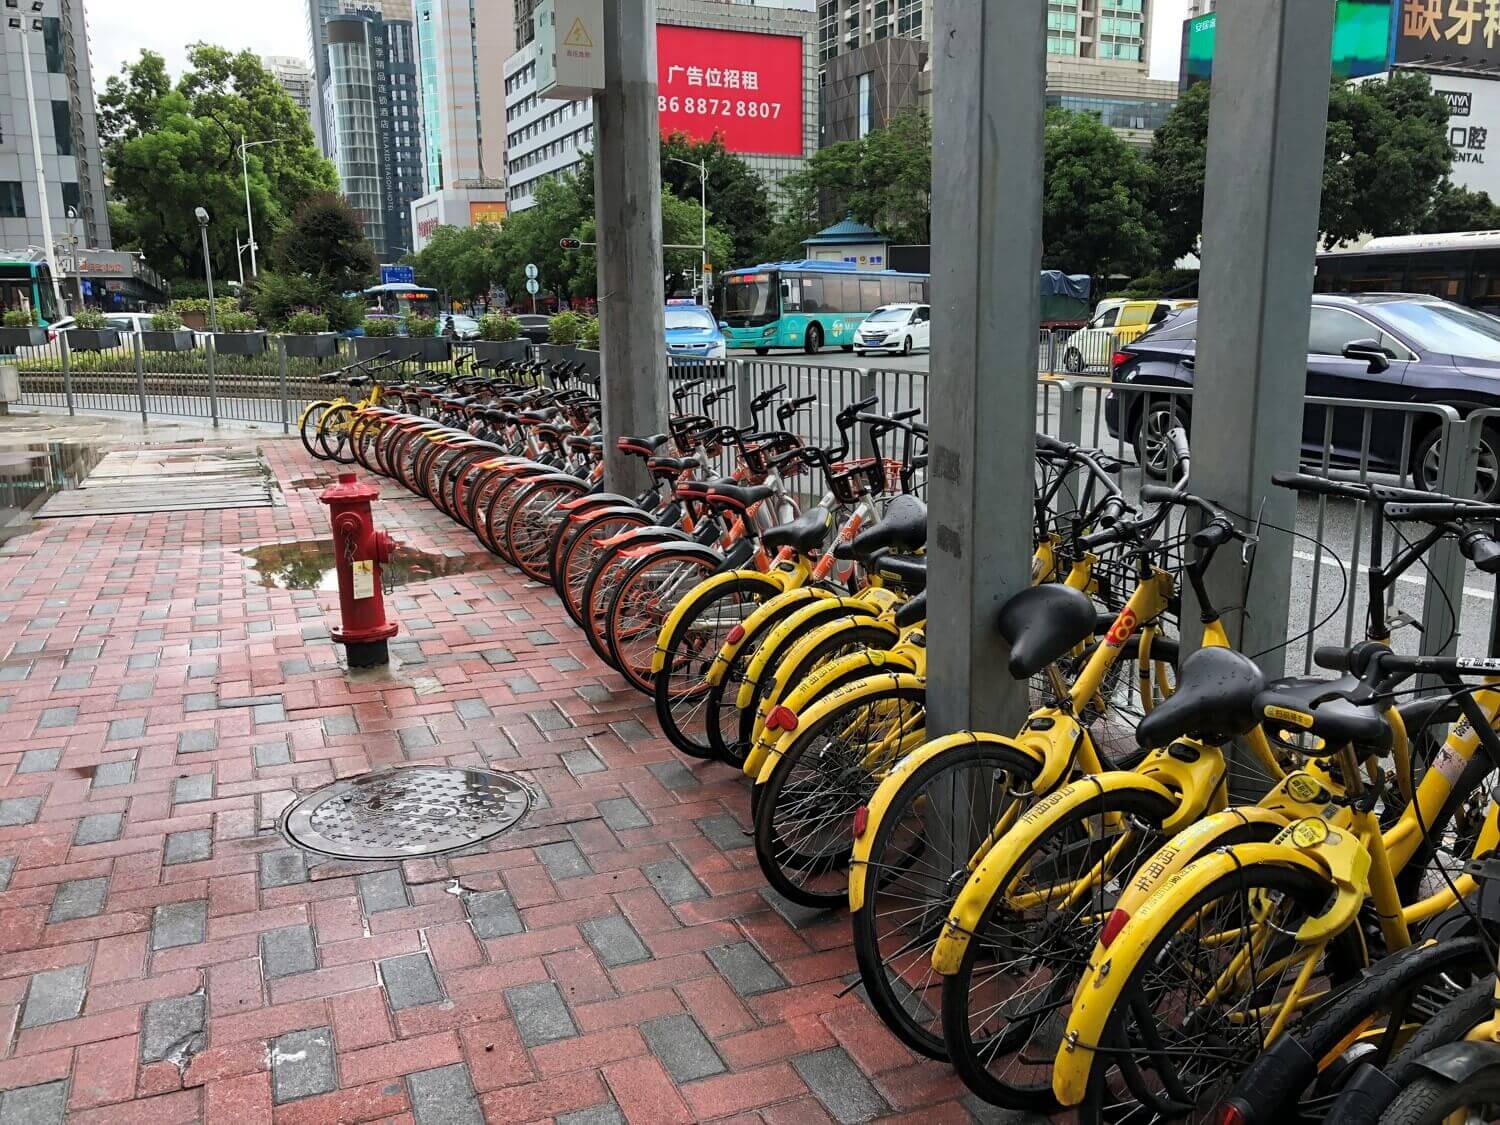 中国ではシェアサイクルが街中にあり、どこでも借りられるが…、ちゃんと指定通り返却しているかで信用評価されてしまいます